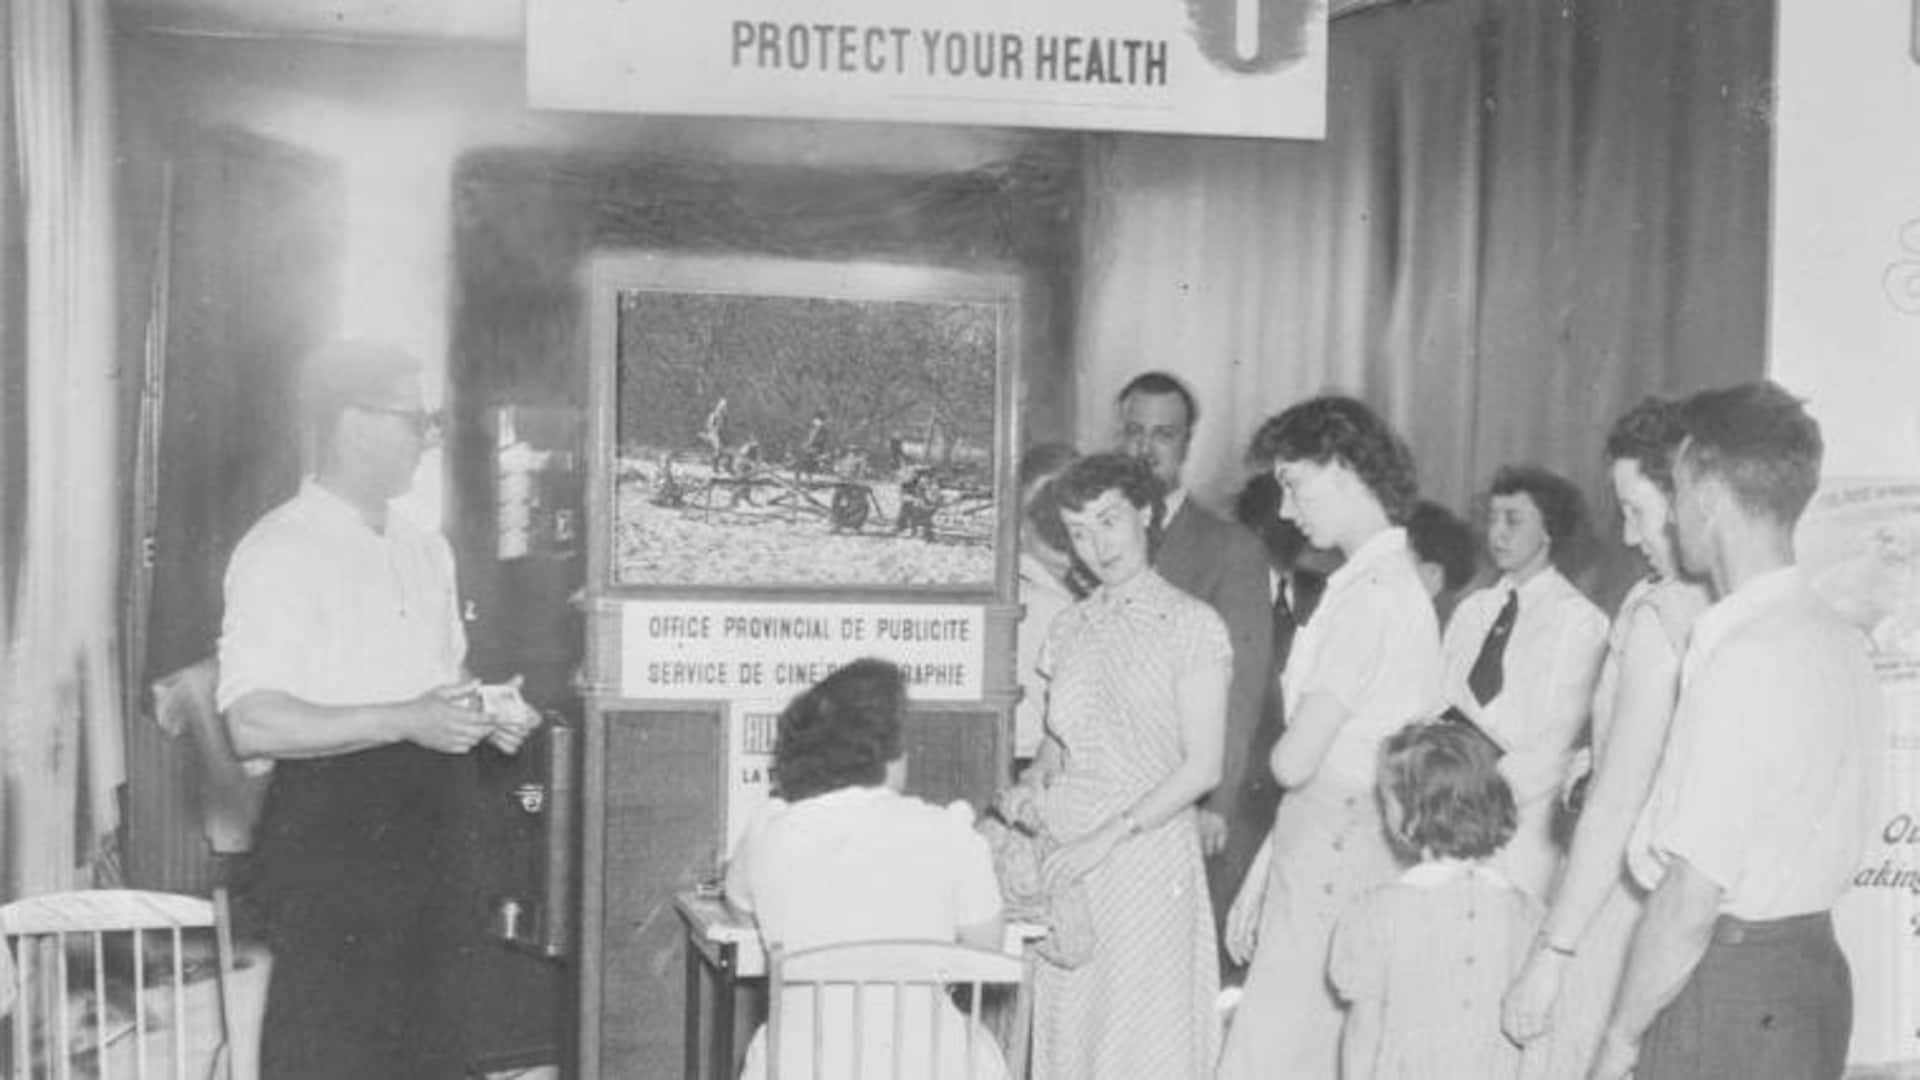 Le personnel infirmer au travail auprès du grand public lors d'un atelier de prévention contre la tuberculose en 1949. Des gens regardent un petit film pendant qu'on fait des radios pulmonaires à d'autres derrière un rideau.